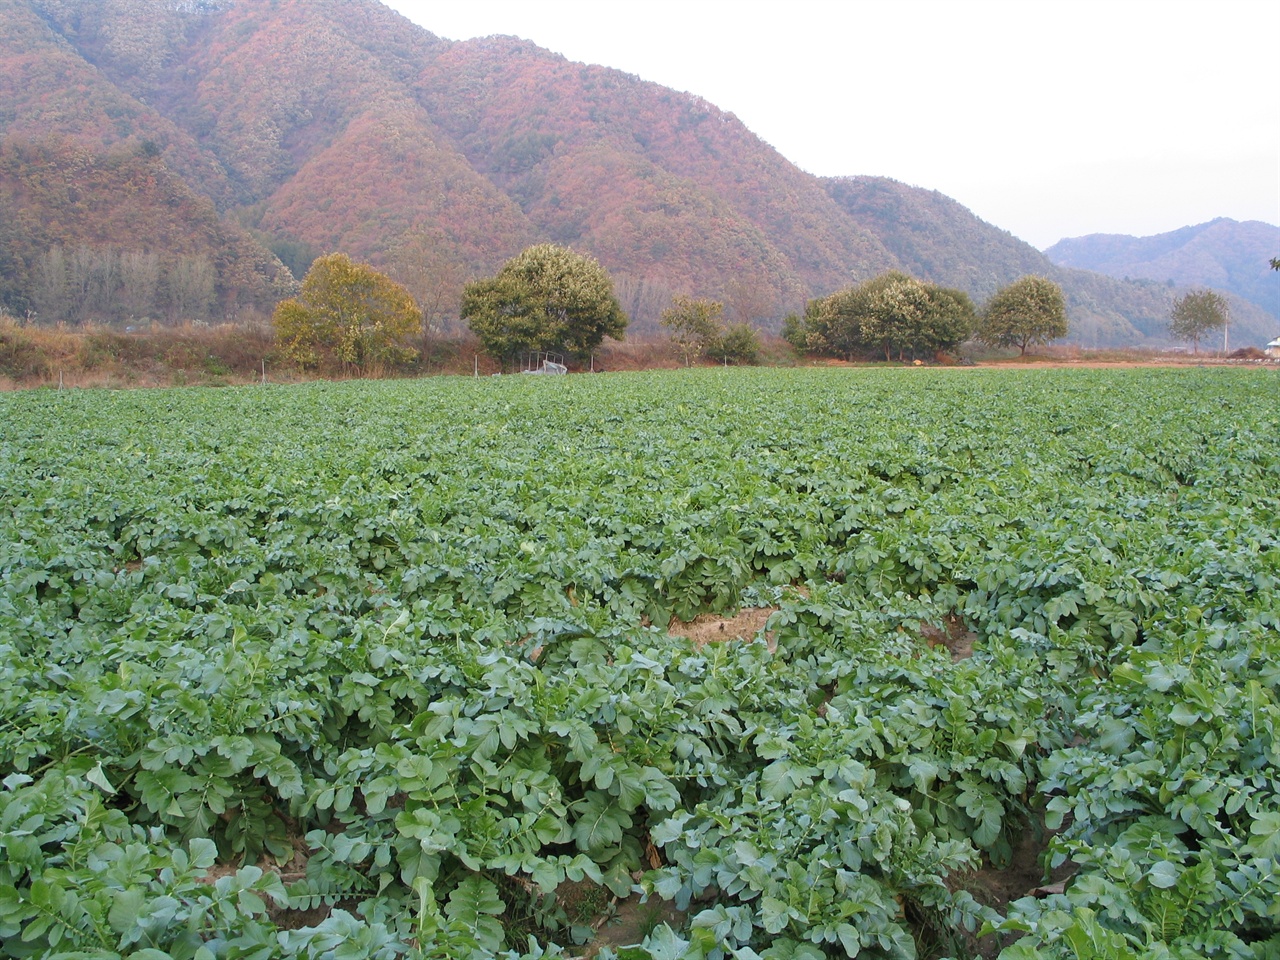 10월 하순경 찍은 무밭 전경
좀 더 자라면 김장용 무로 수확한다.